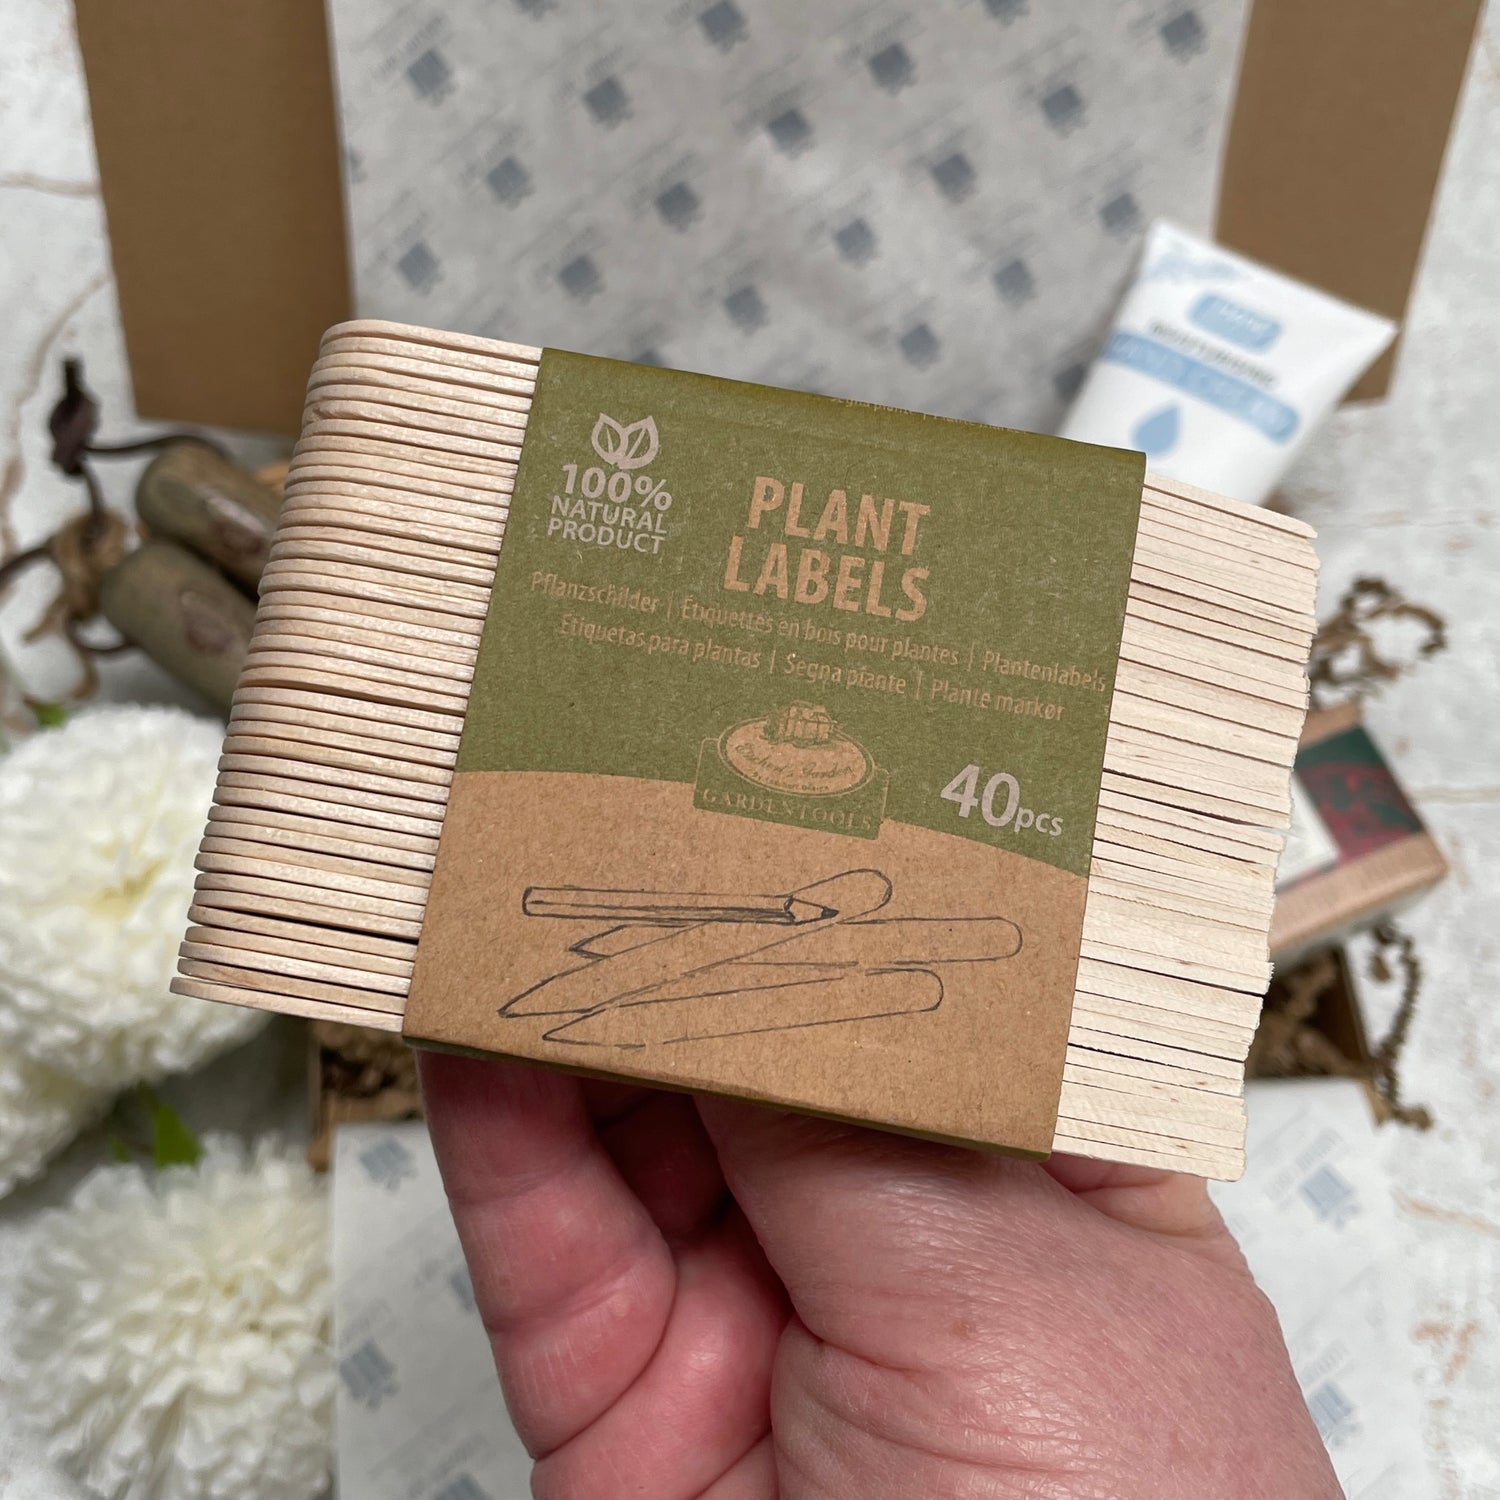 40 wooden plant labels